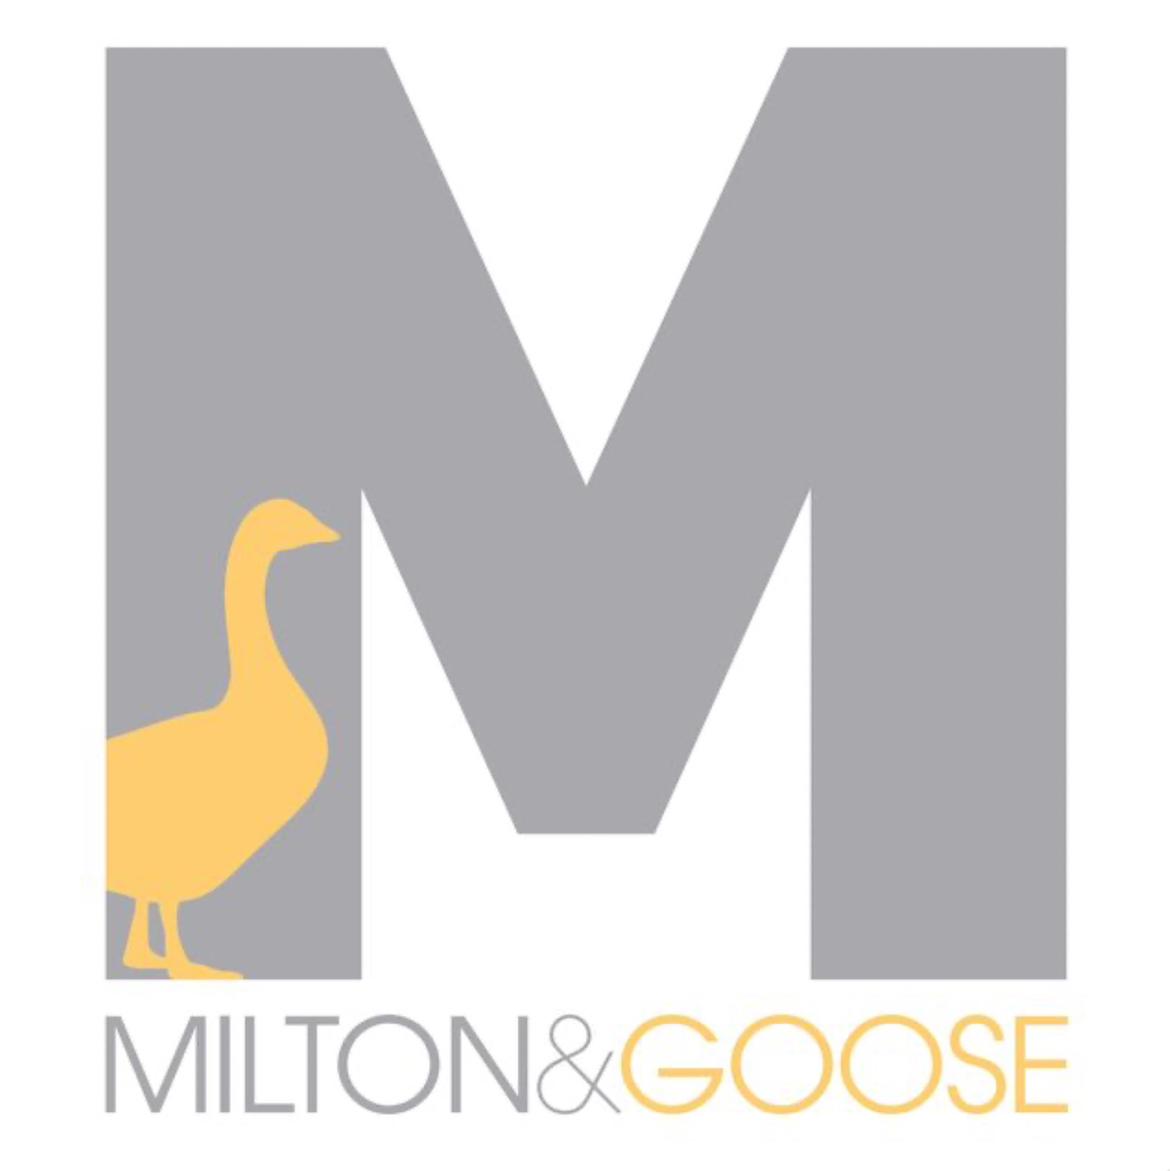 Milton & Goose's images